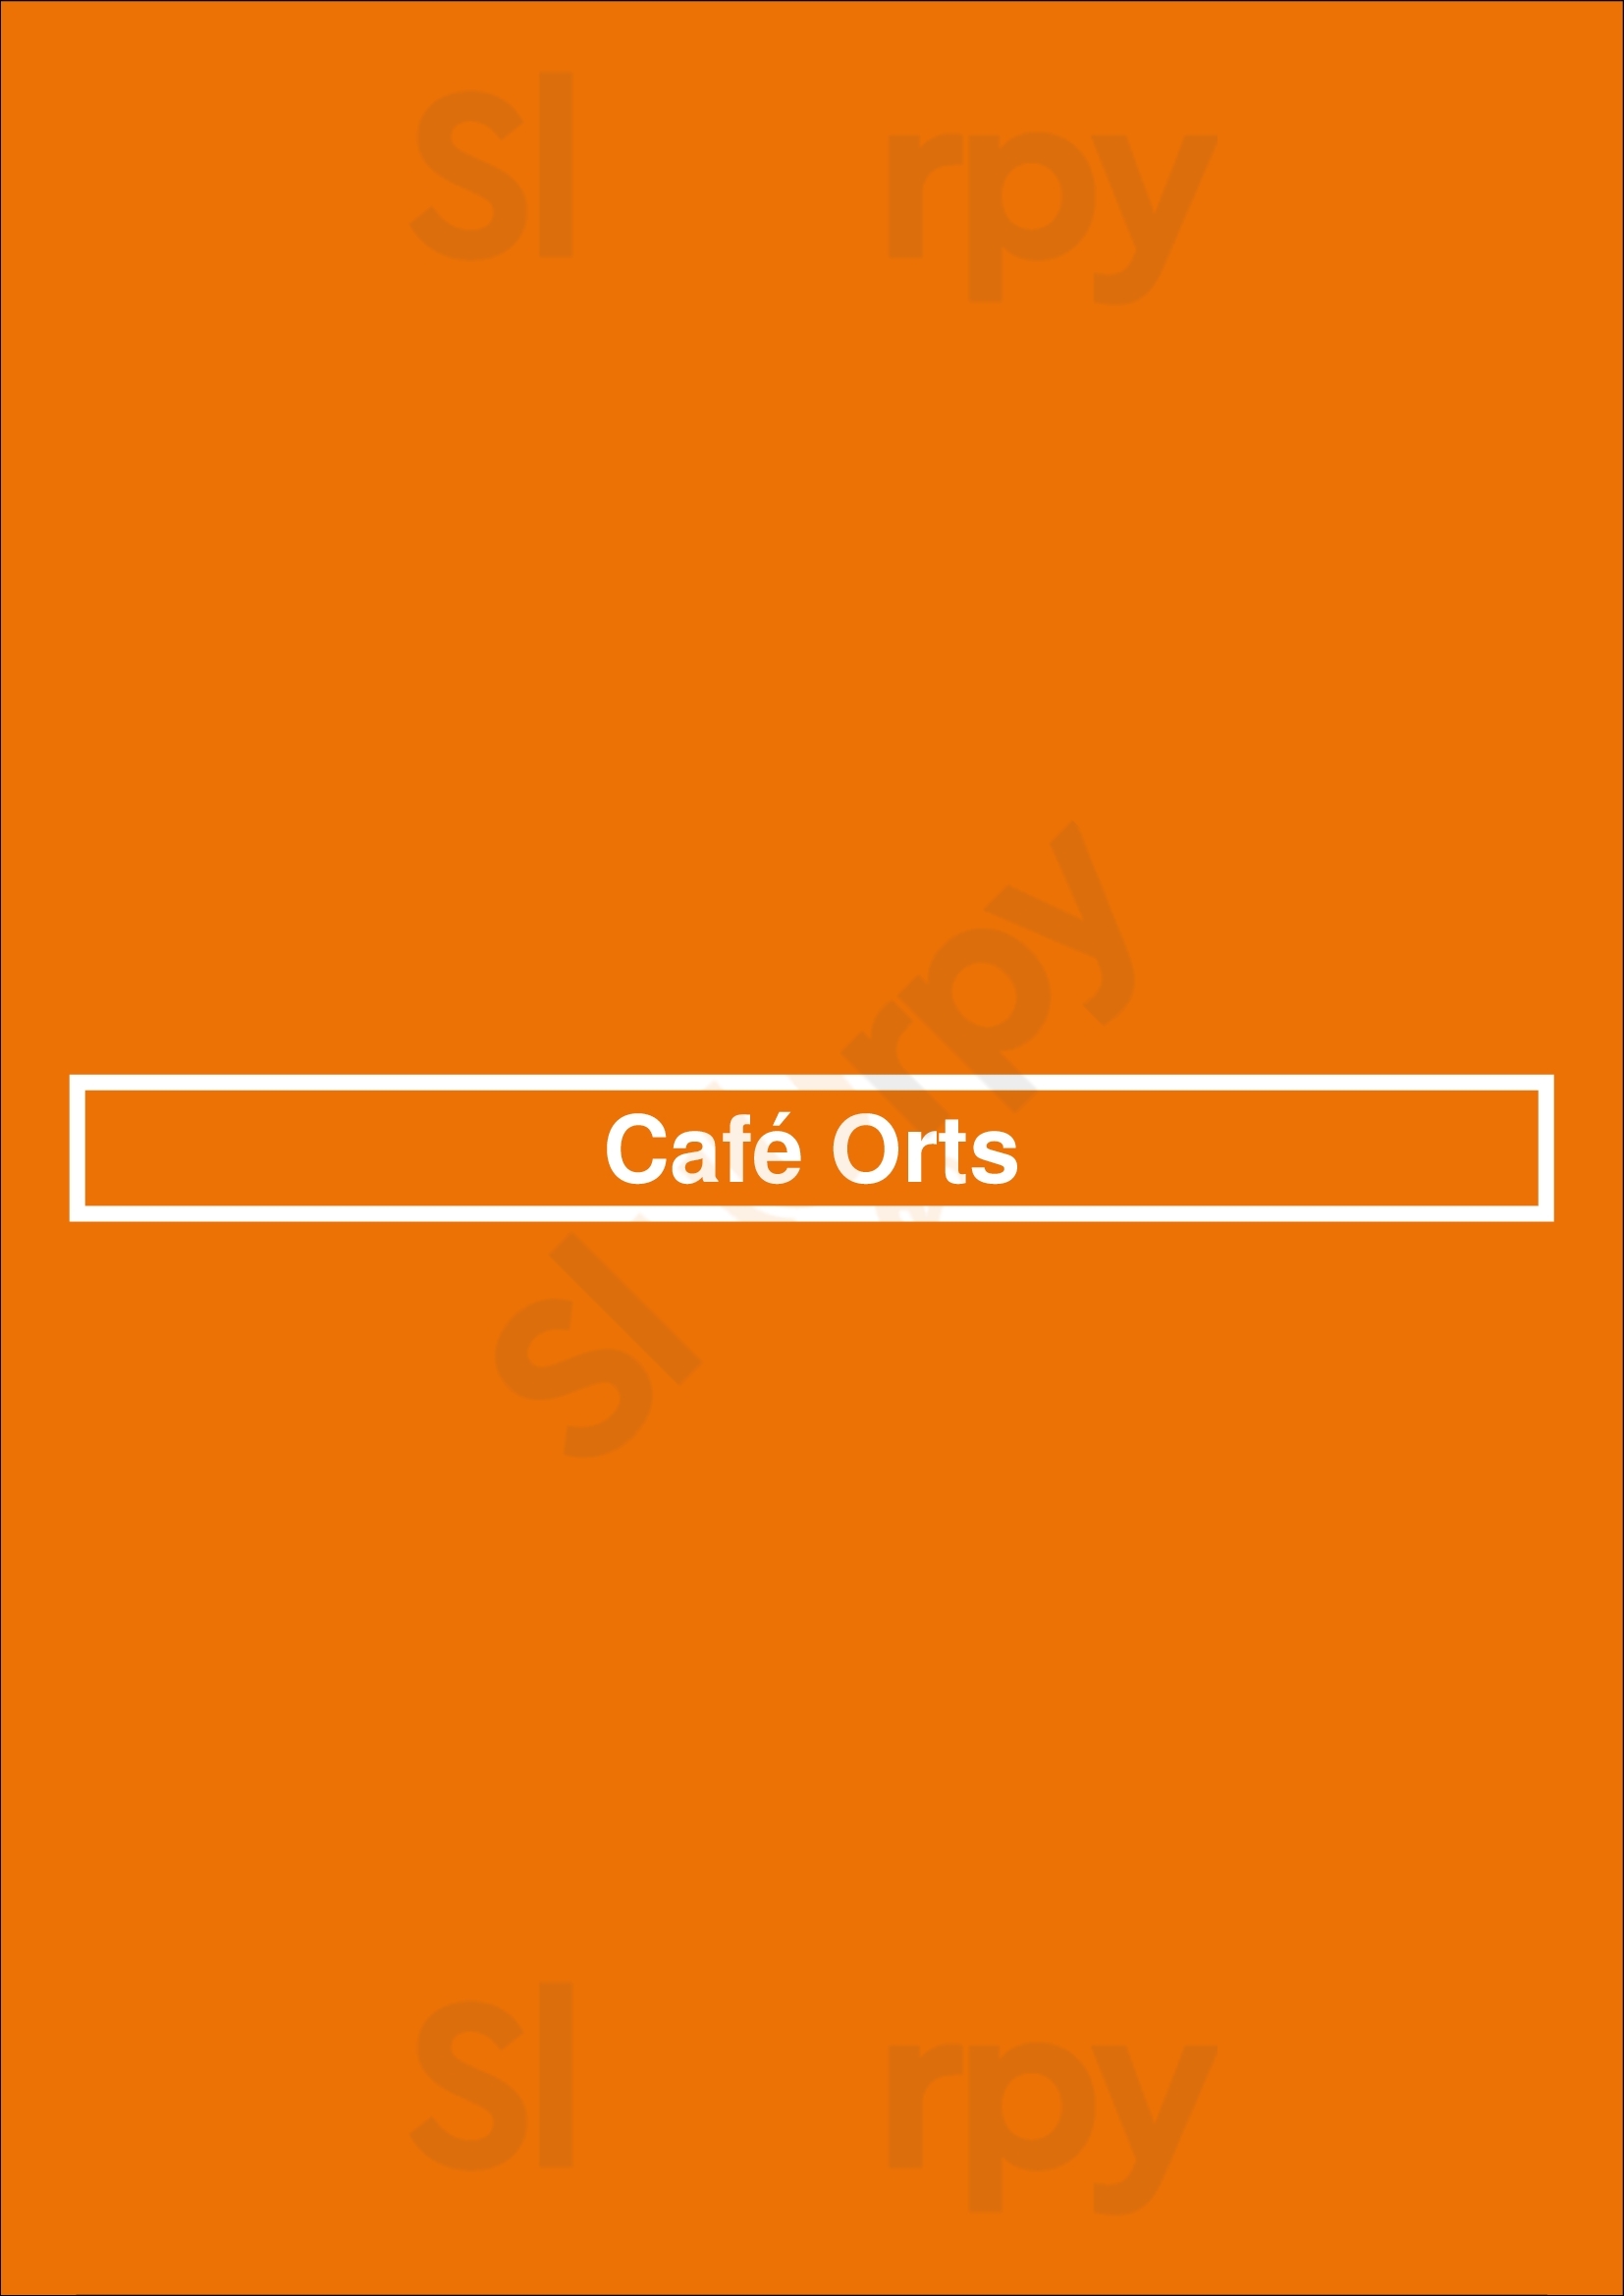 Café Orts Bruxelles Menu - 1